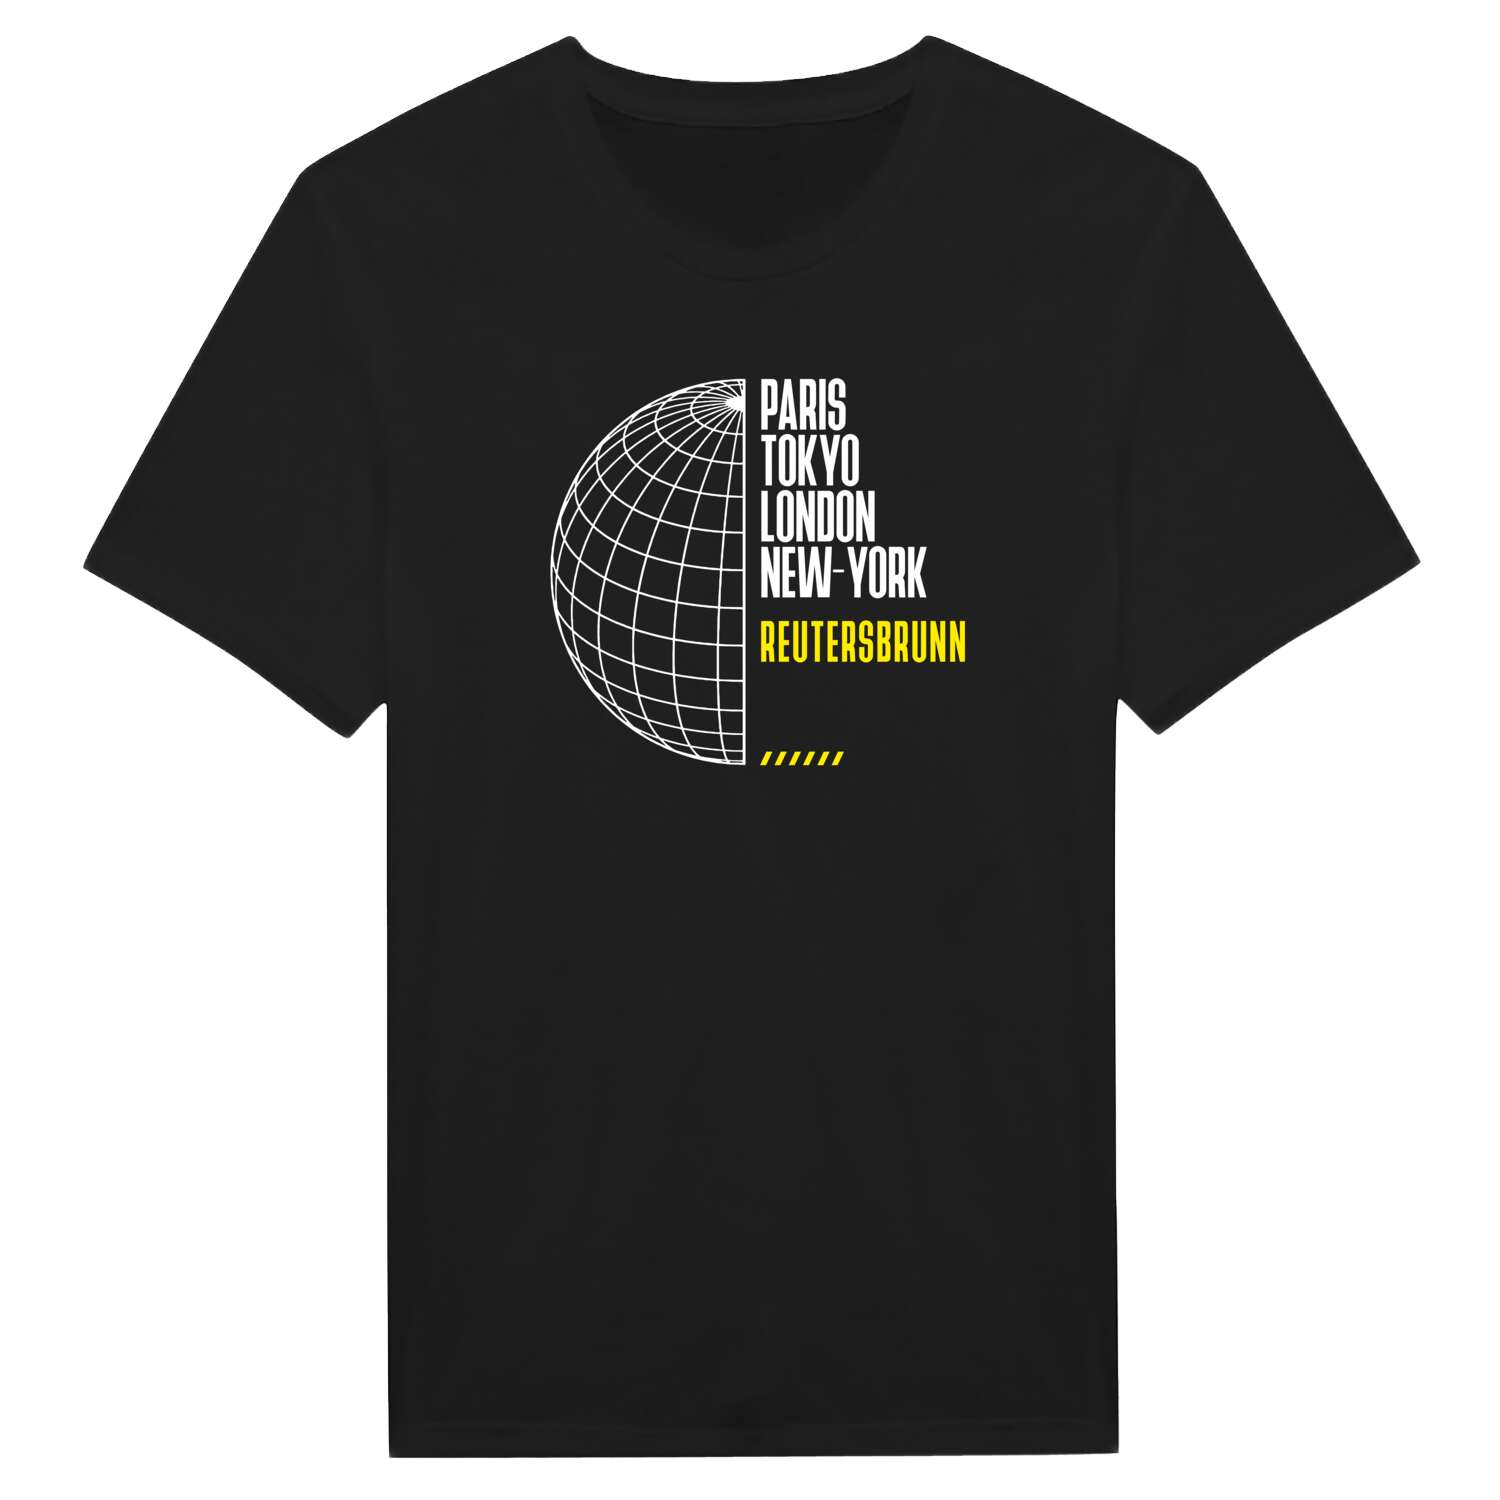 Reutersbrunn T-Shirt »Paris Tokyo London«